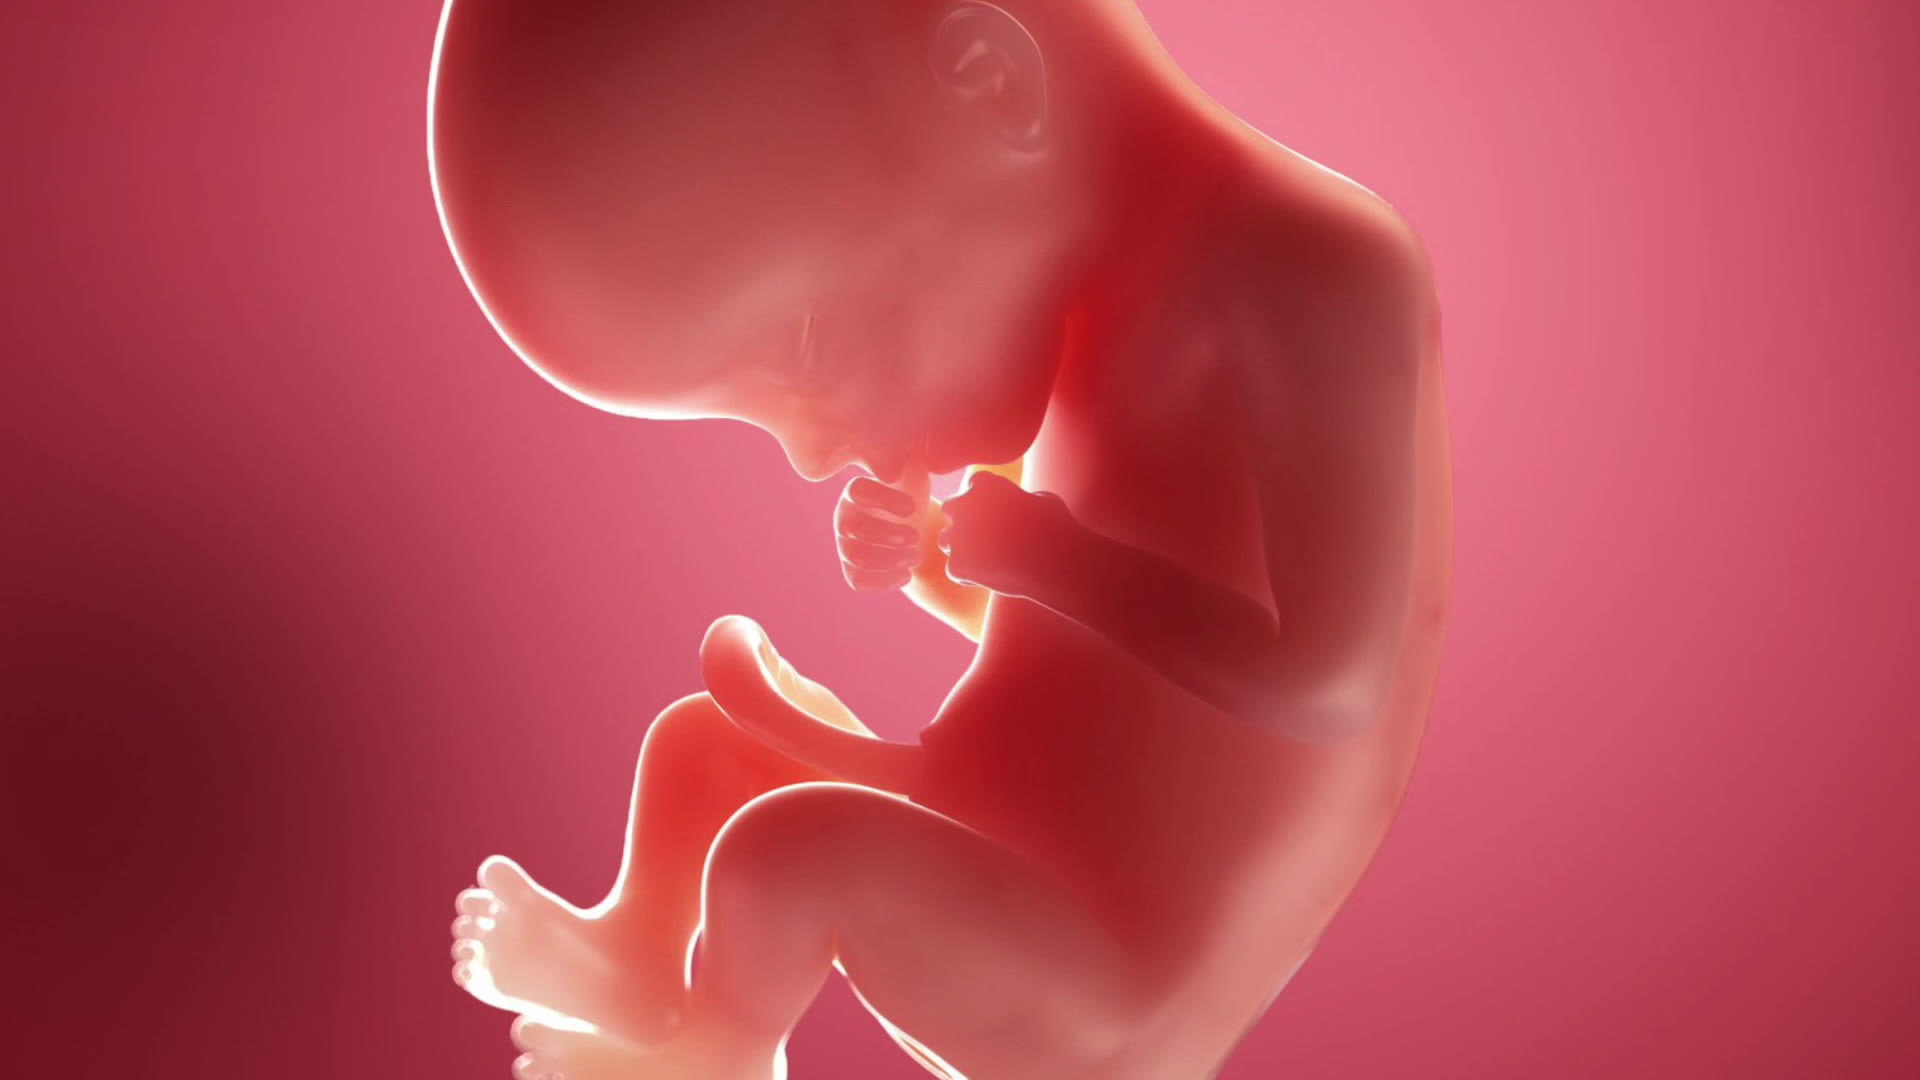 Semana 22 de embarazo: el bebé se ríe, llora y enoja